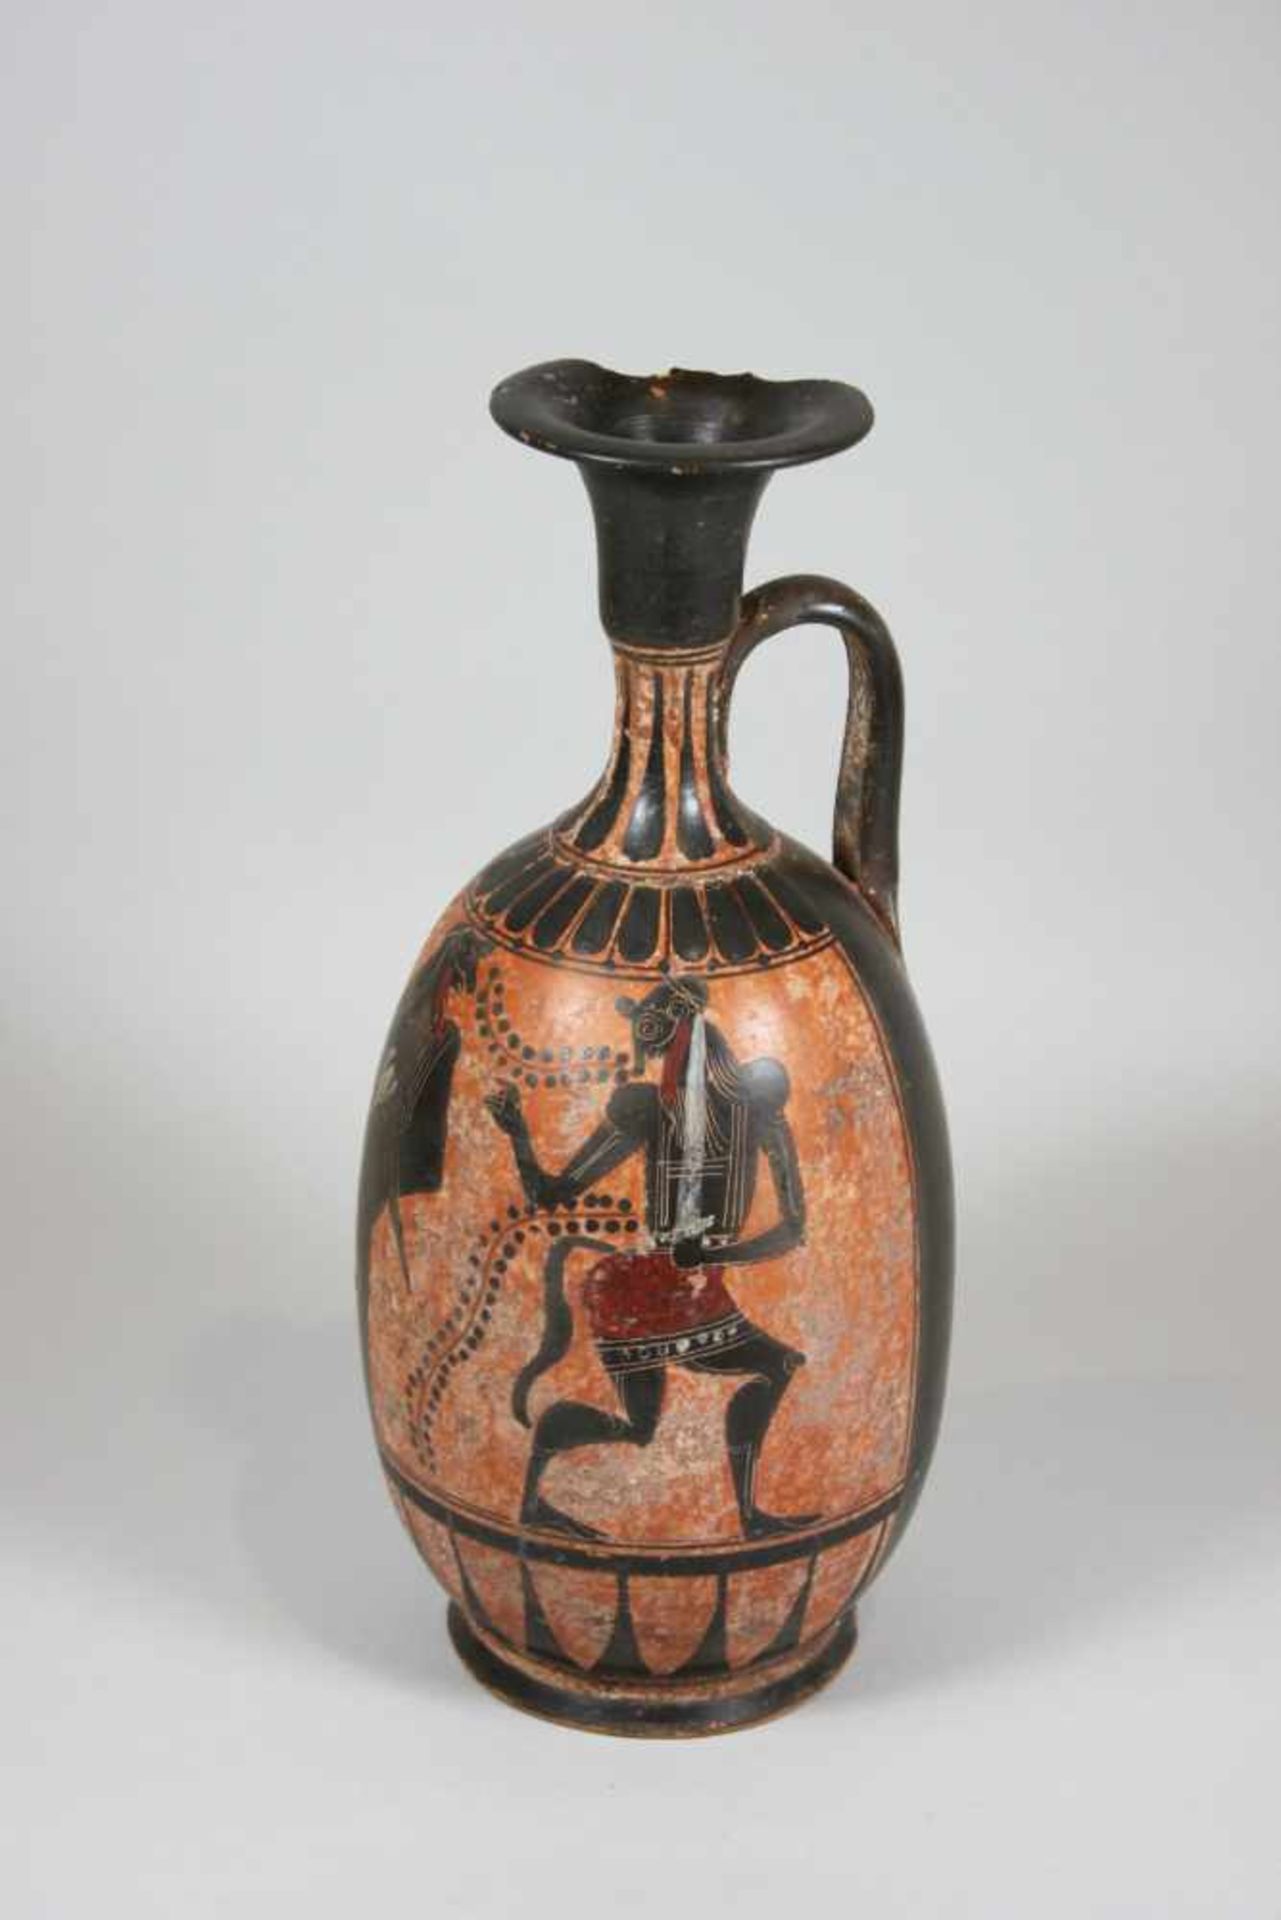 Etruskisches Öl-/ Salbeigefäß, Ende 5. Jh. v. Chr.,schwarzfigurige Malerei. H.: 28 cm, B.: ca. 13